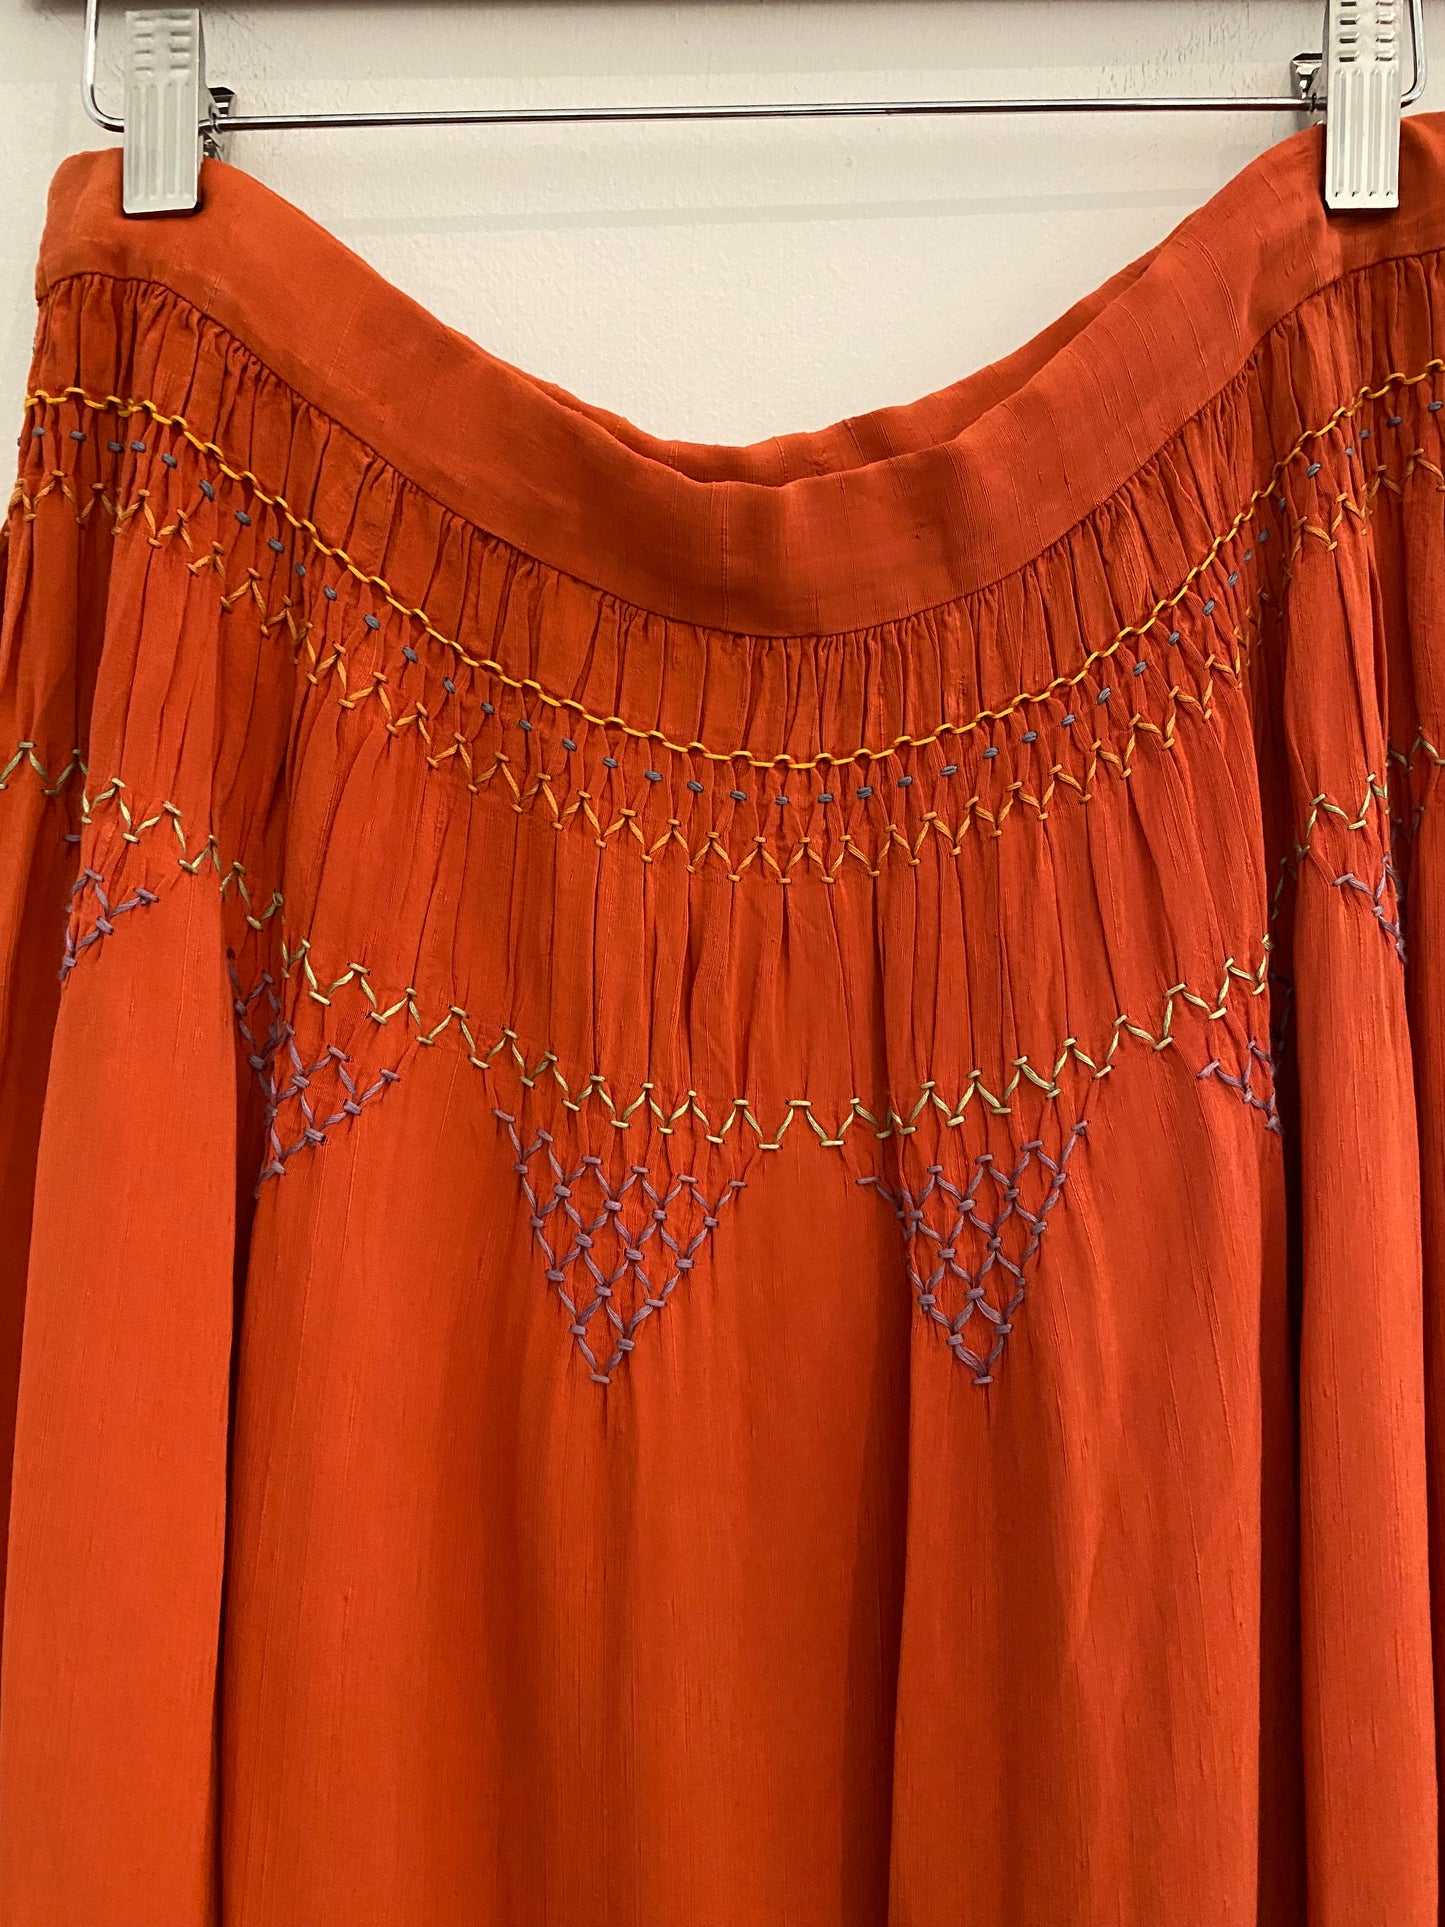 1940s Linen Smocked Orange Folk Skirt- 34” Waist